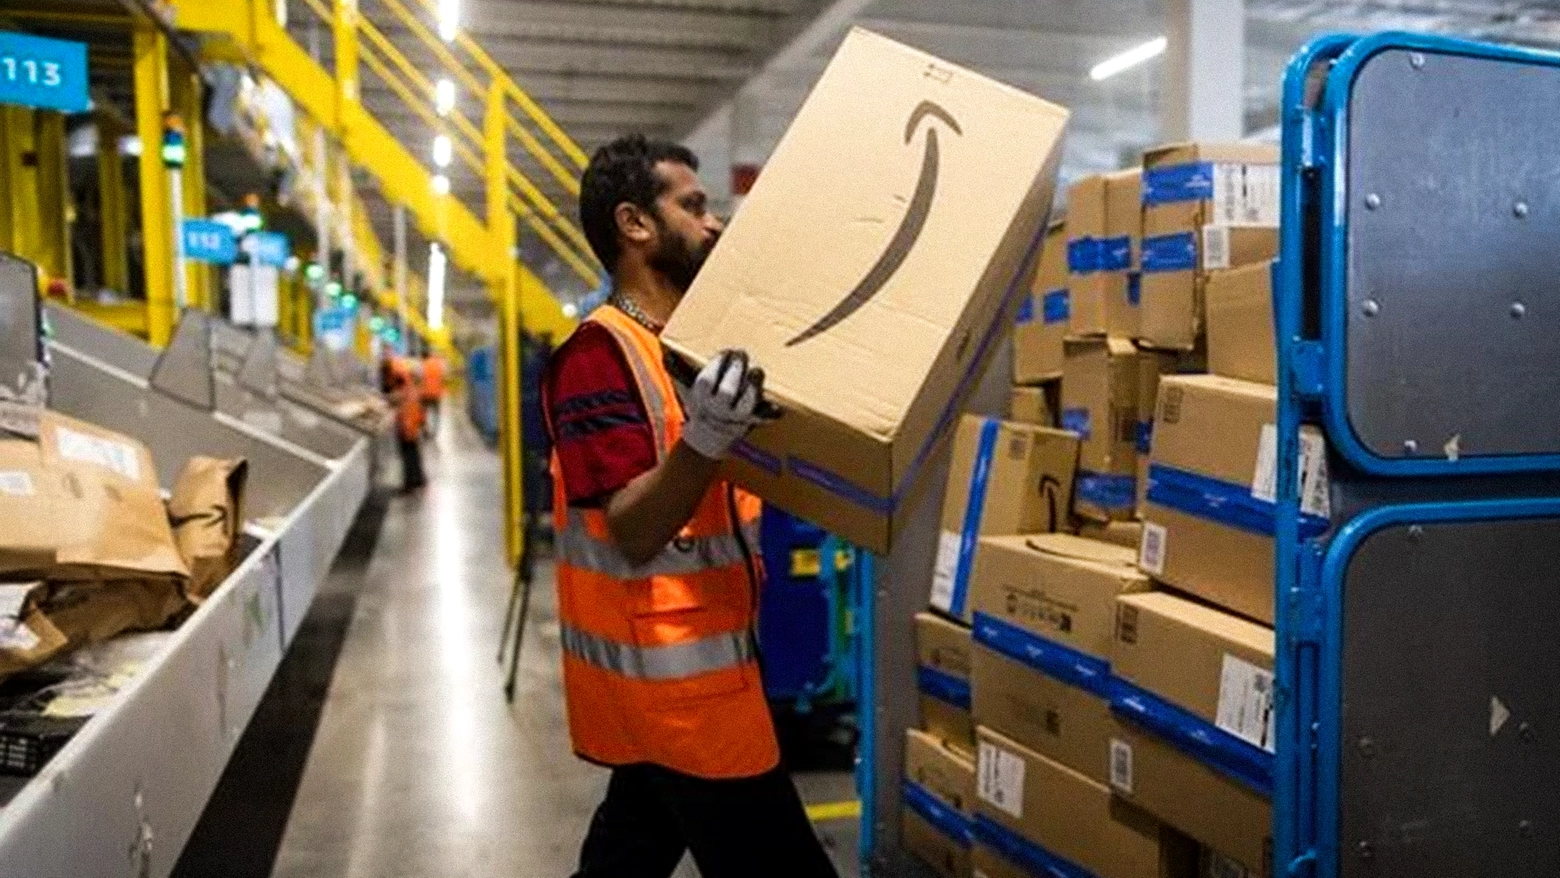 L'inchiesta della procura di Milano su Amazon ipotizza uno scenario di "sfruttamento dei lavoratori"